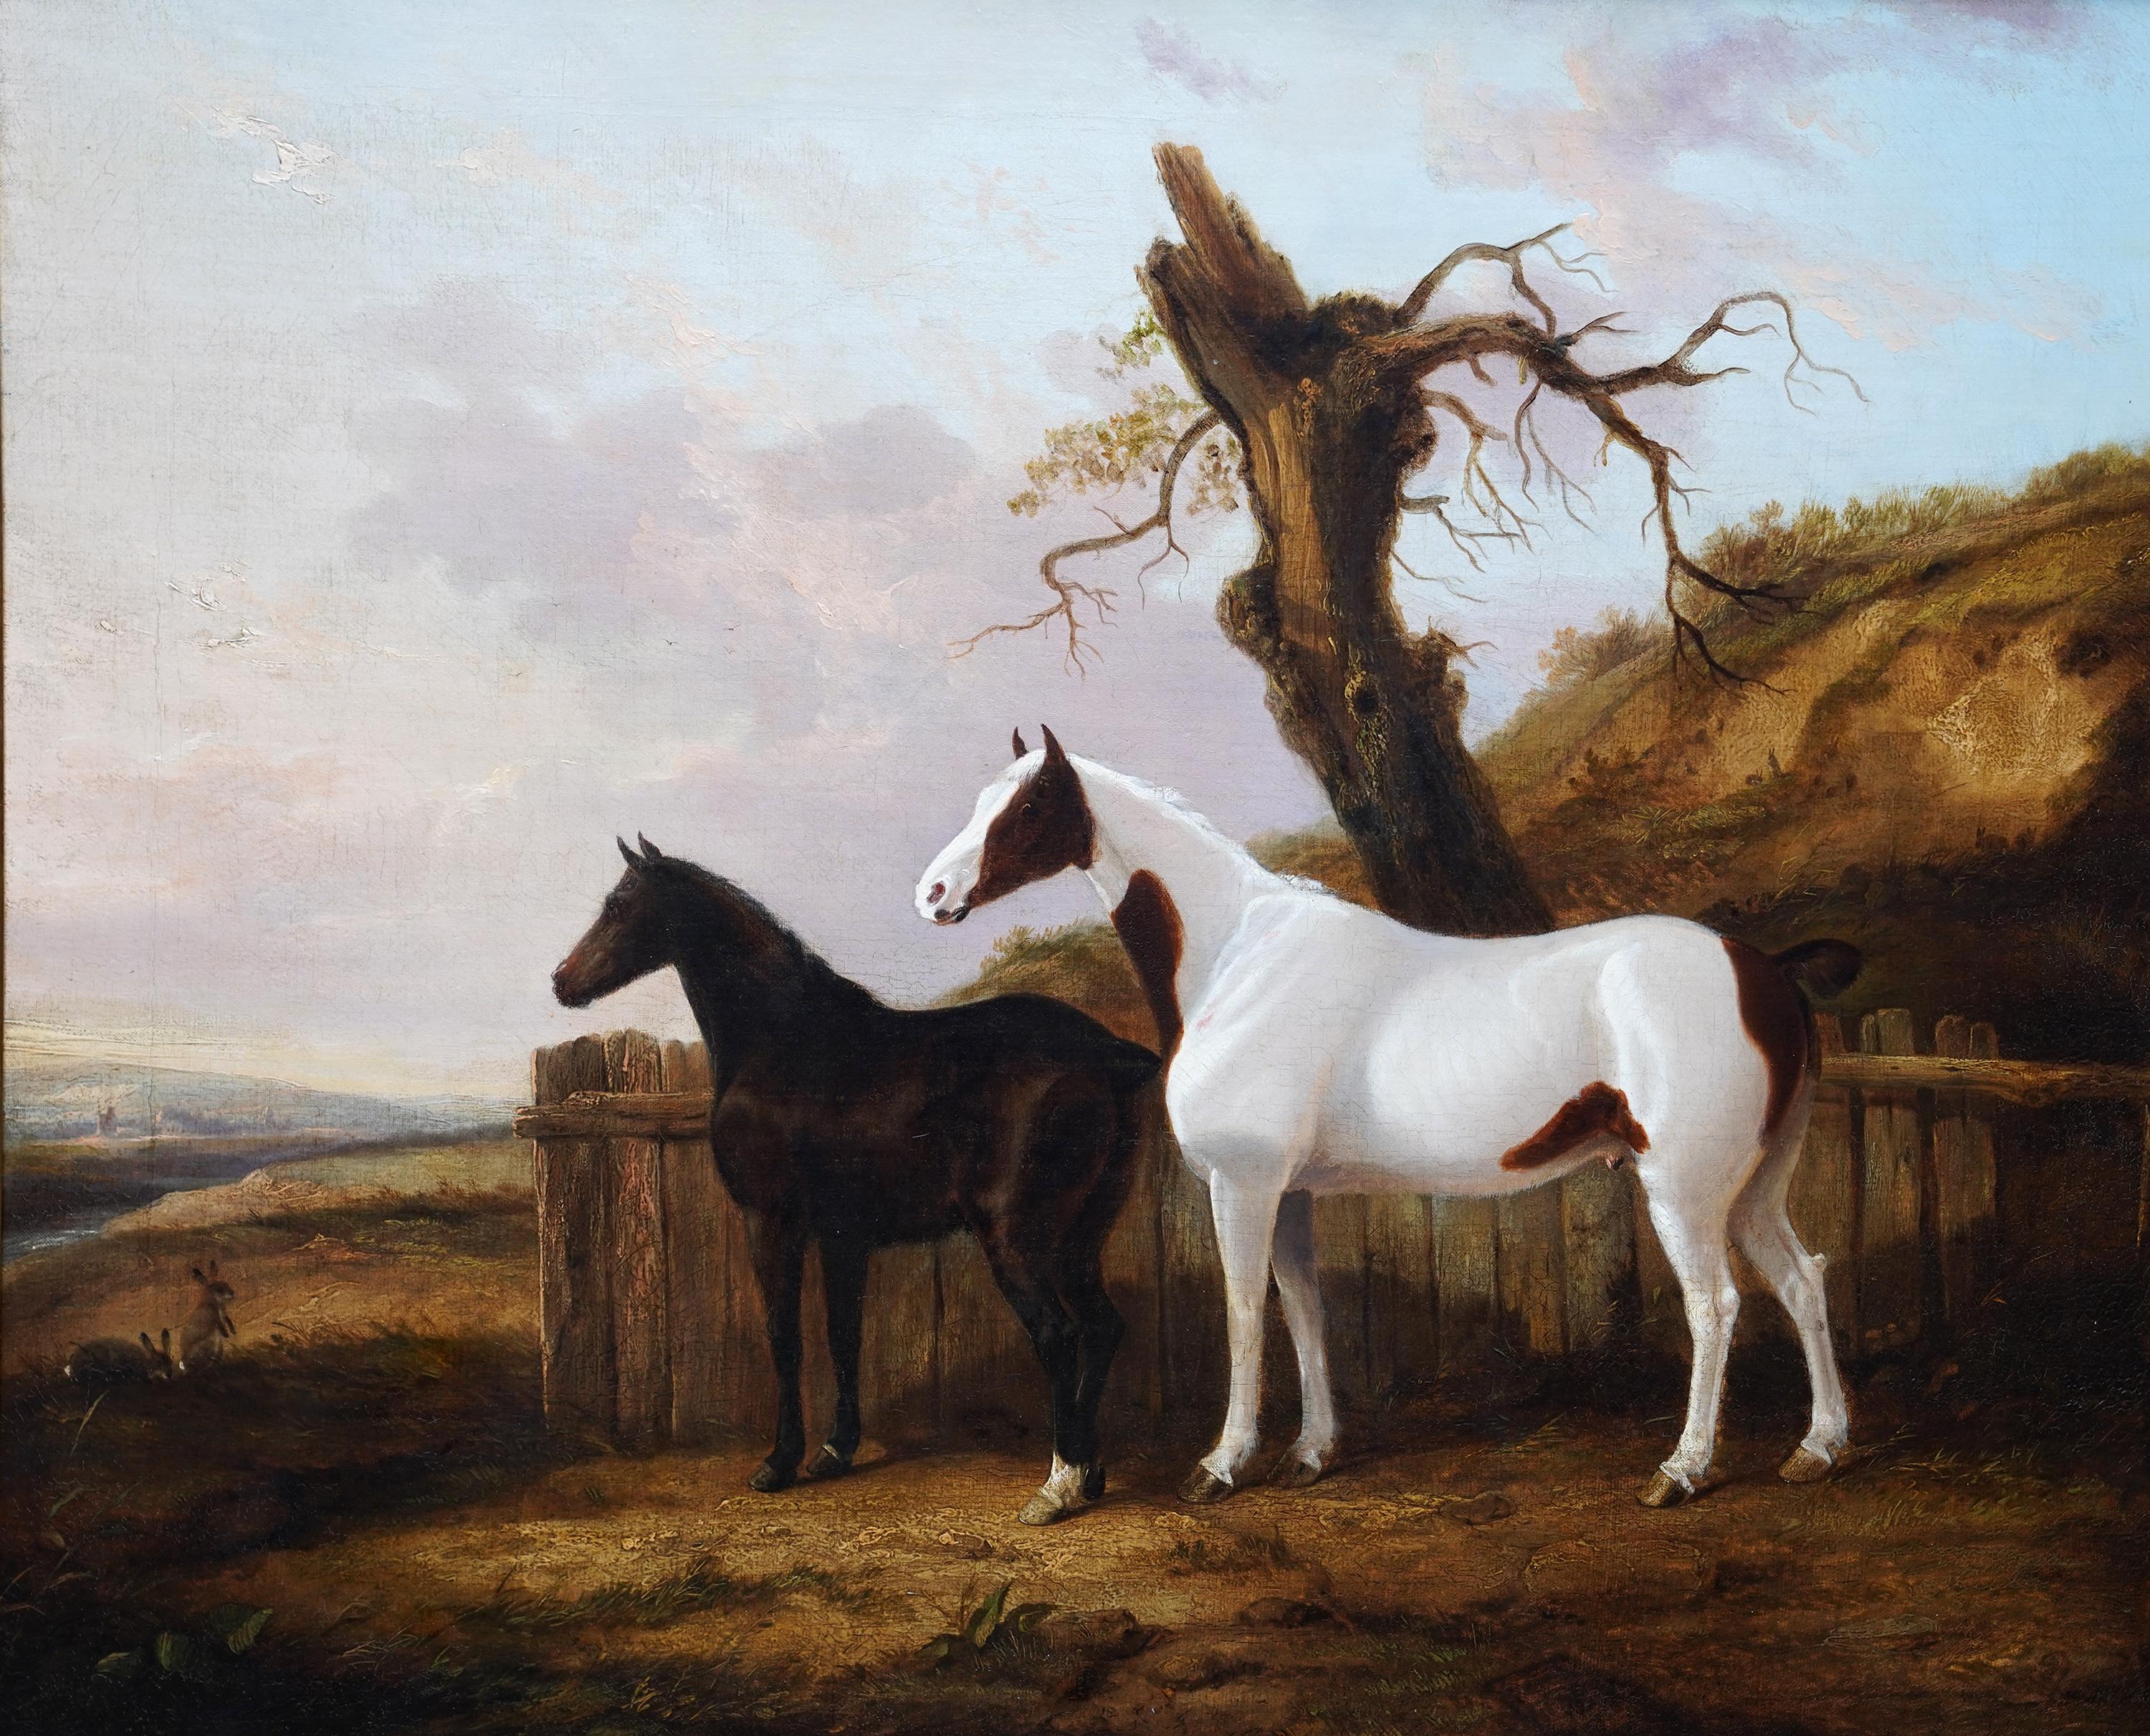 Portrait de deux chevaux dans un paysage - Peinture à l'huile d'art équestre britannique du 19e siècle - Painting de George Cole